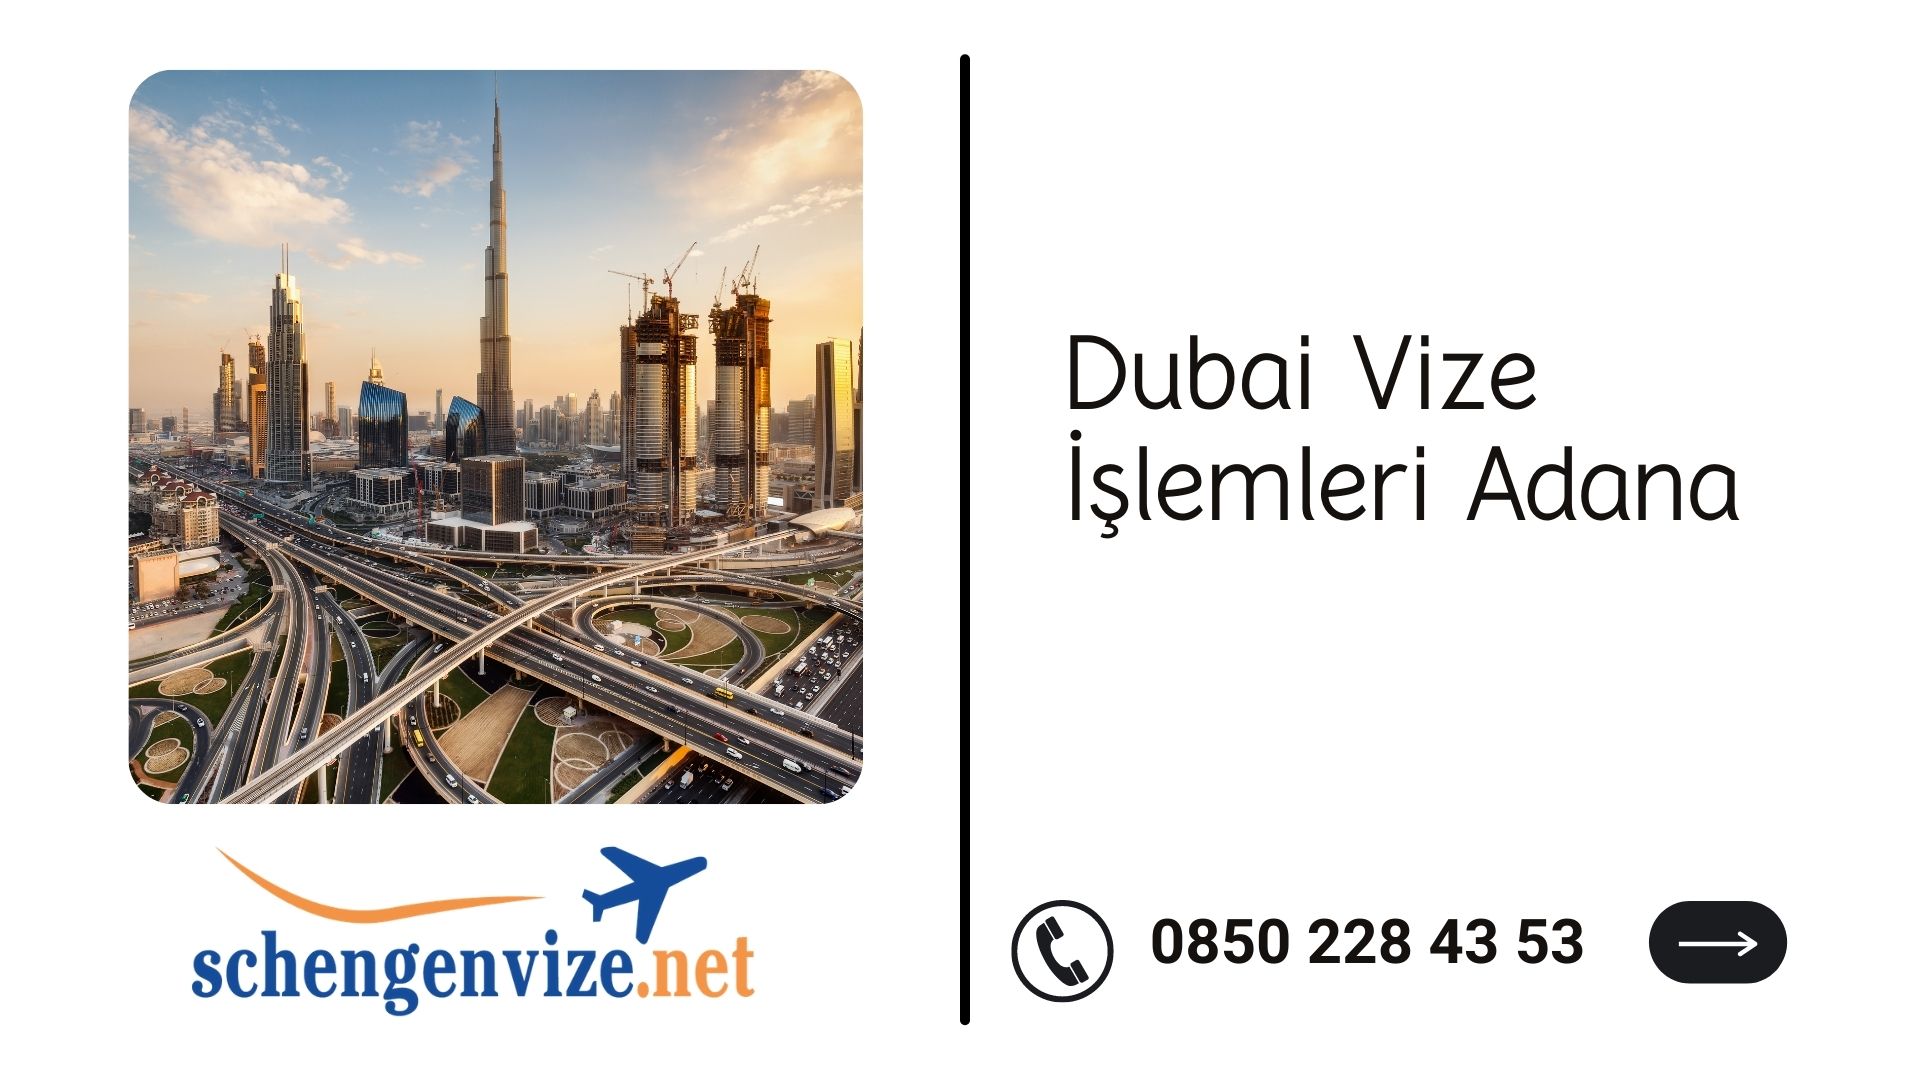 Dubai Vize İşlemleri Adana